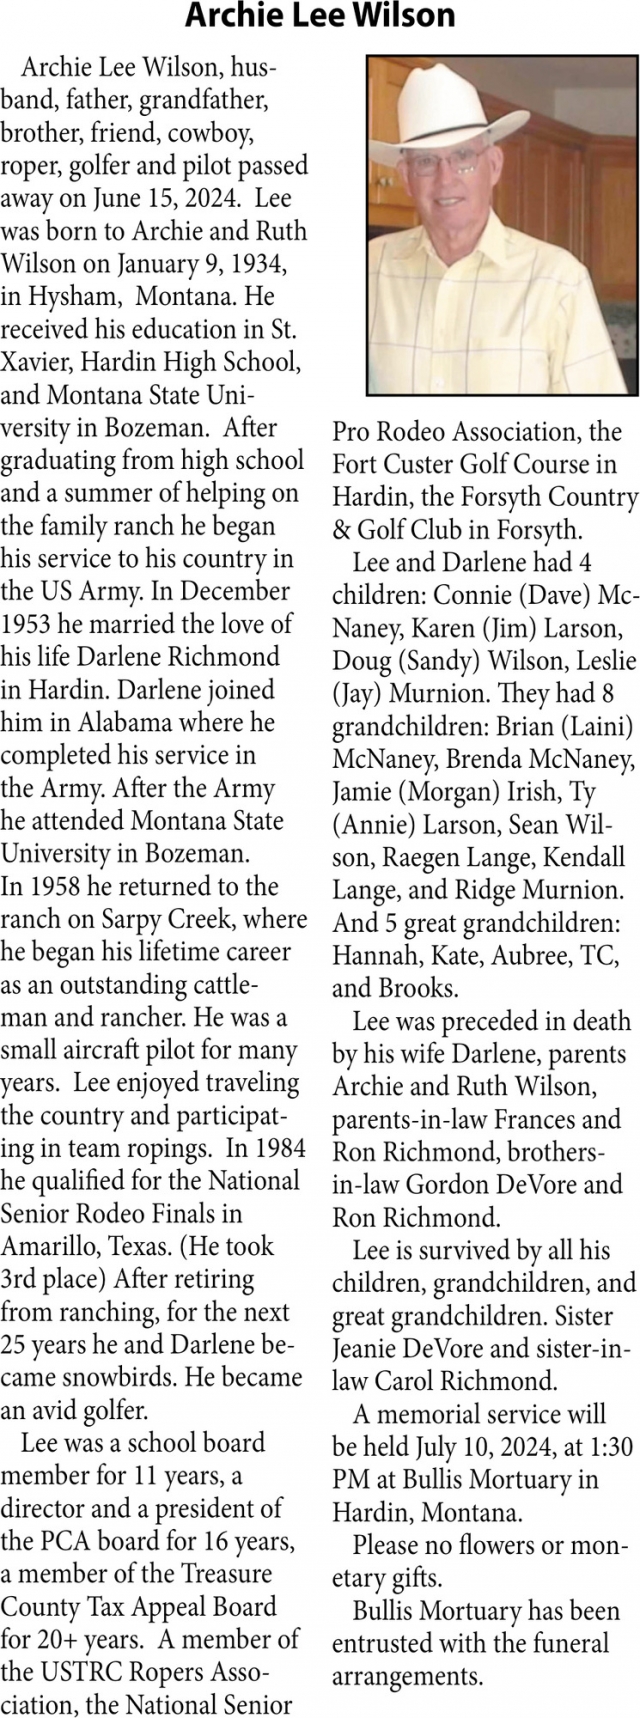 Archie Lee Wilson, Obituaries, Glendive, MT